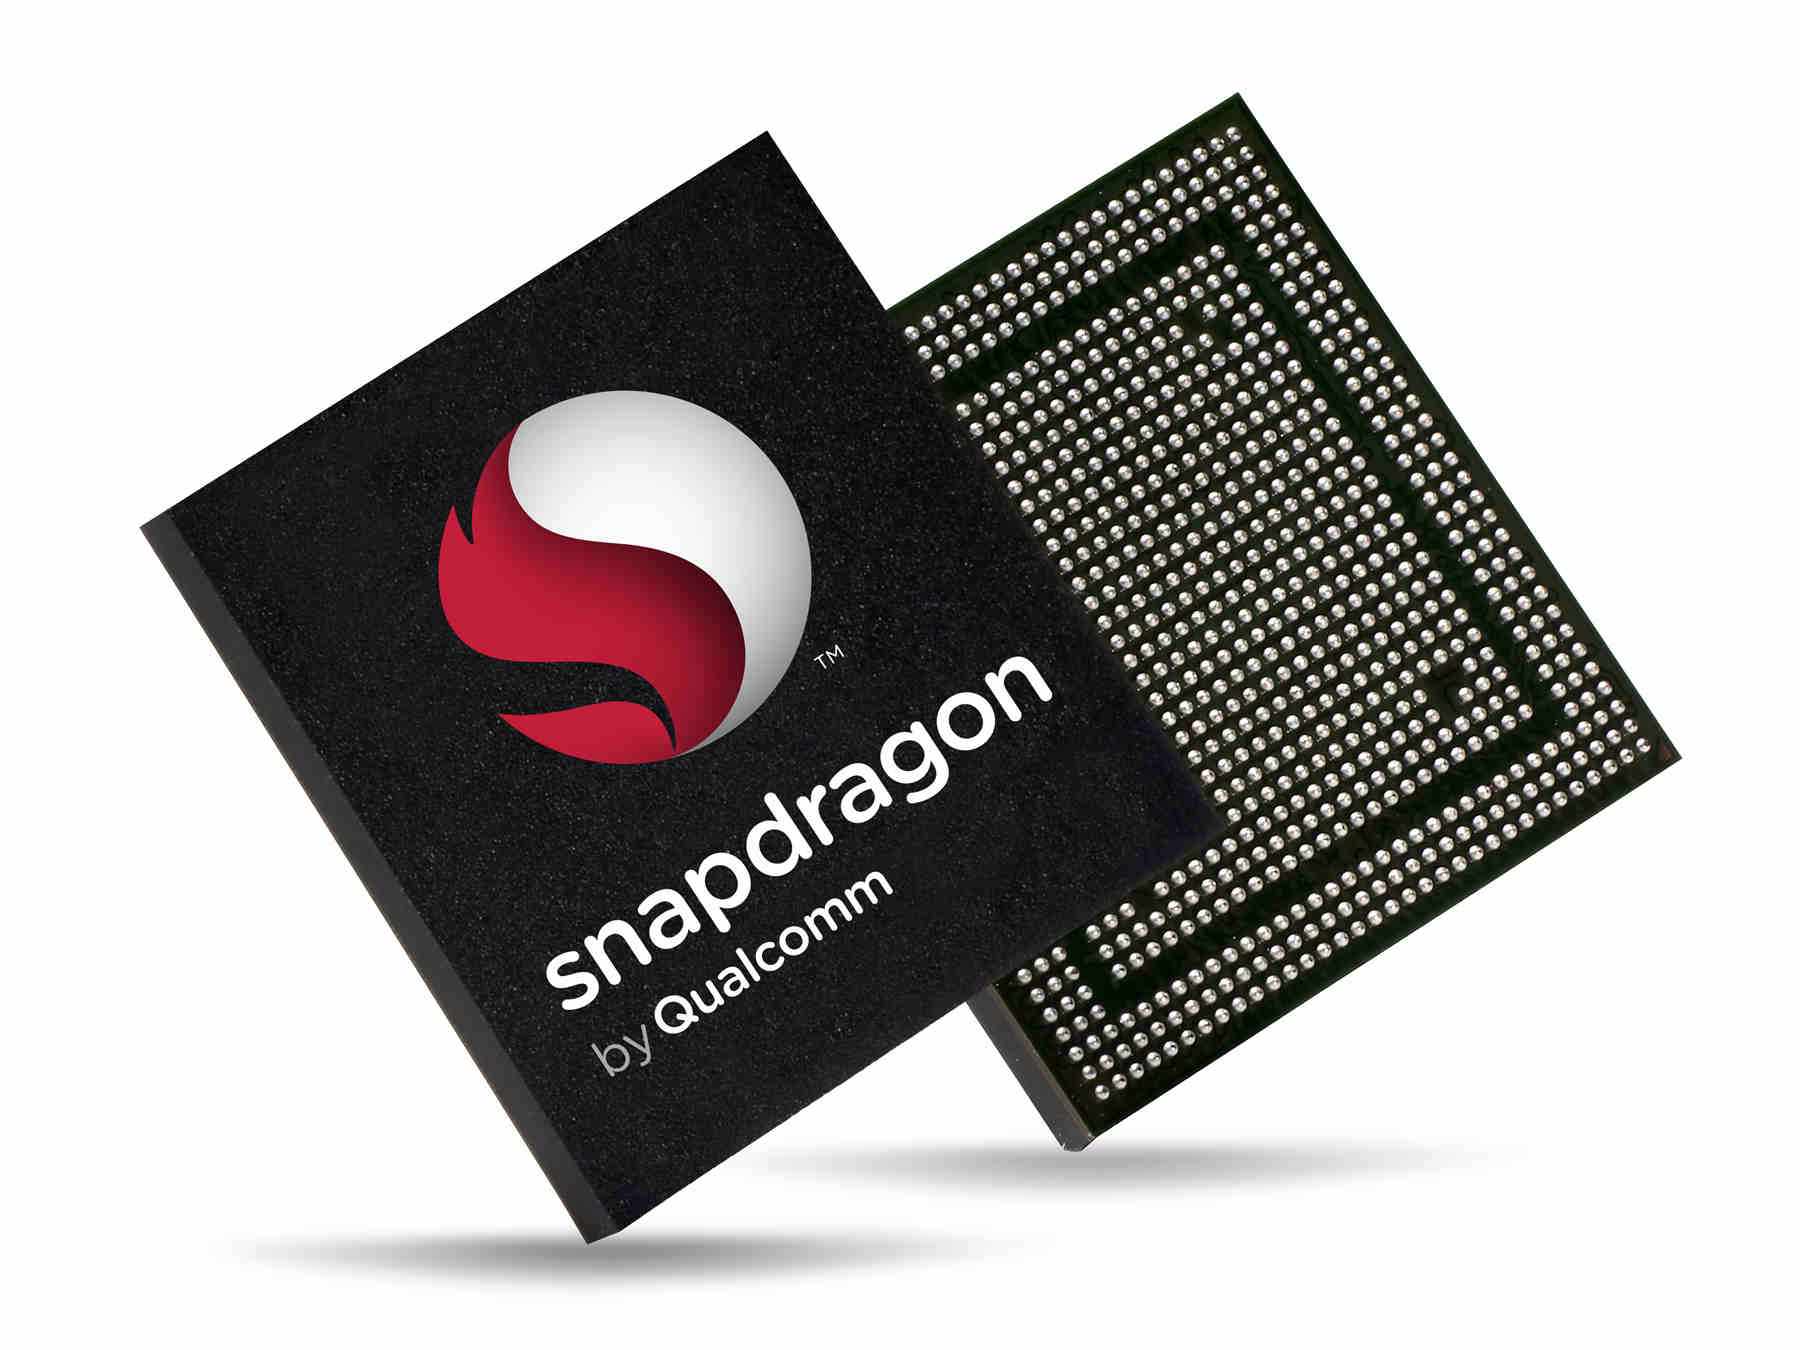 Snapdragon Chip With Logo Yureka.jpeg